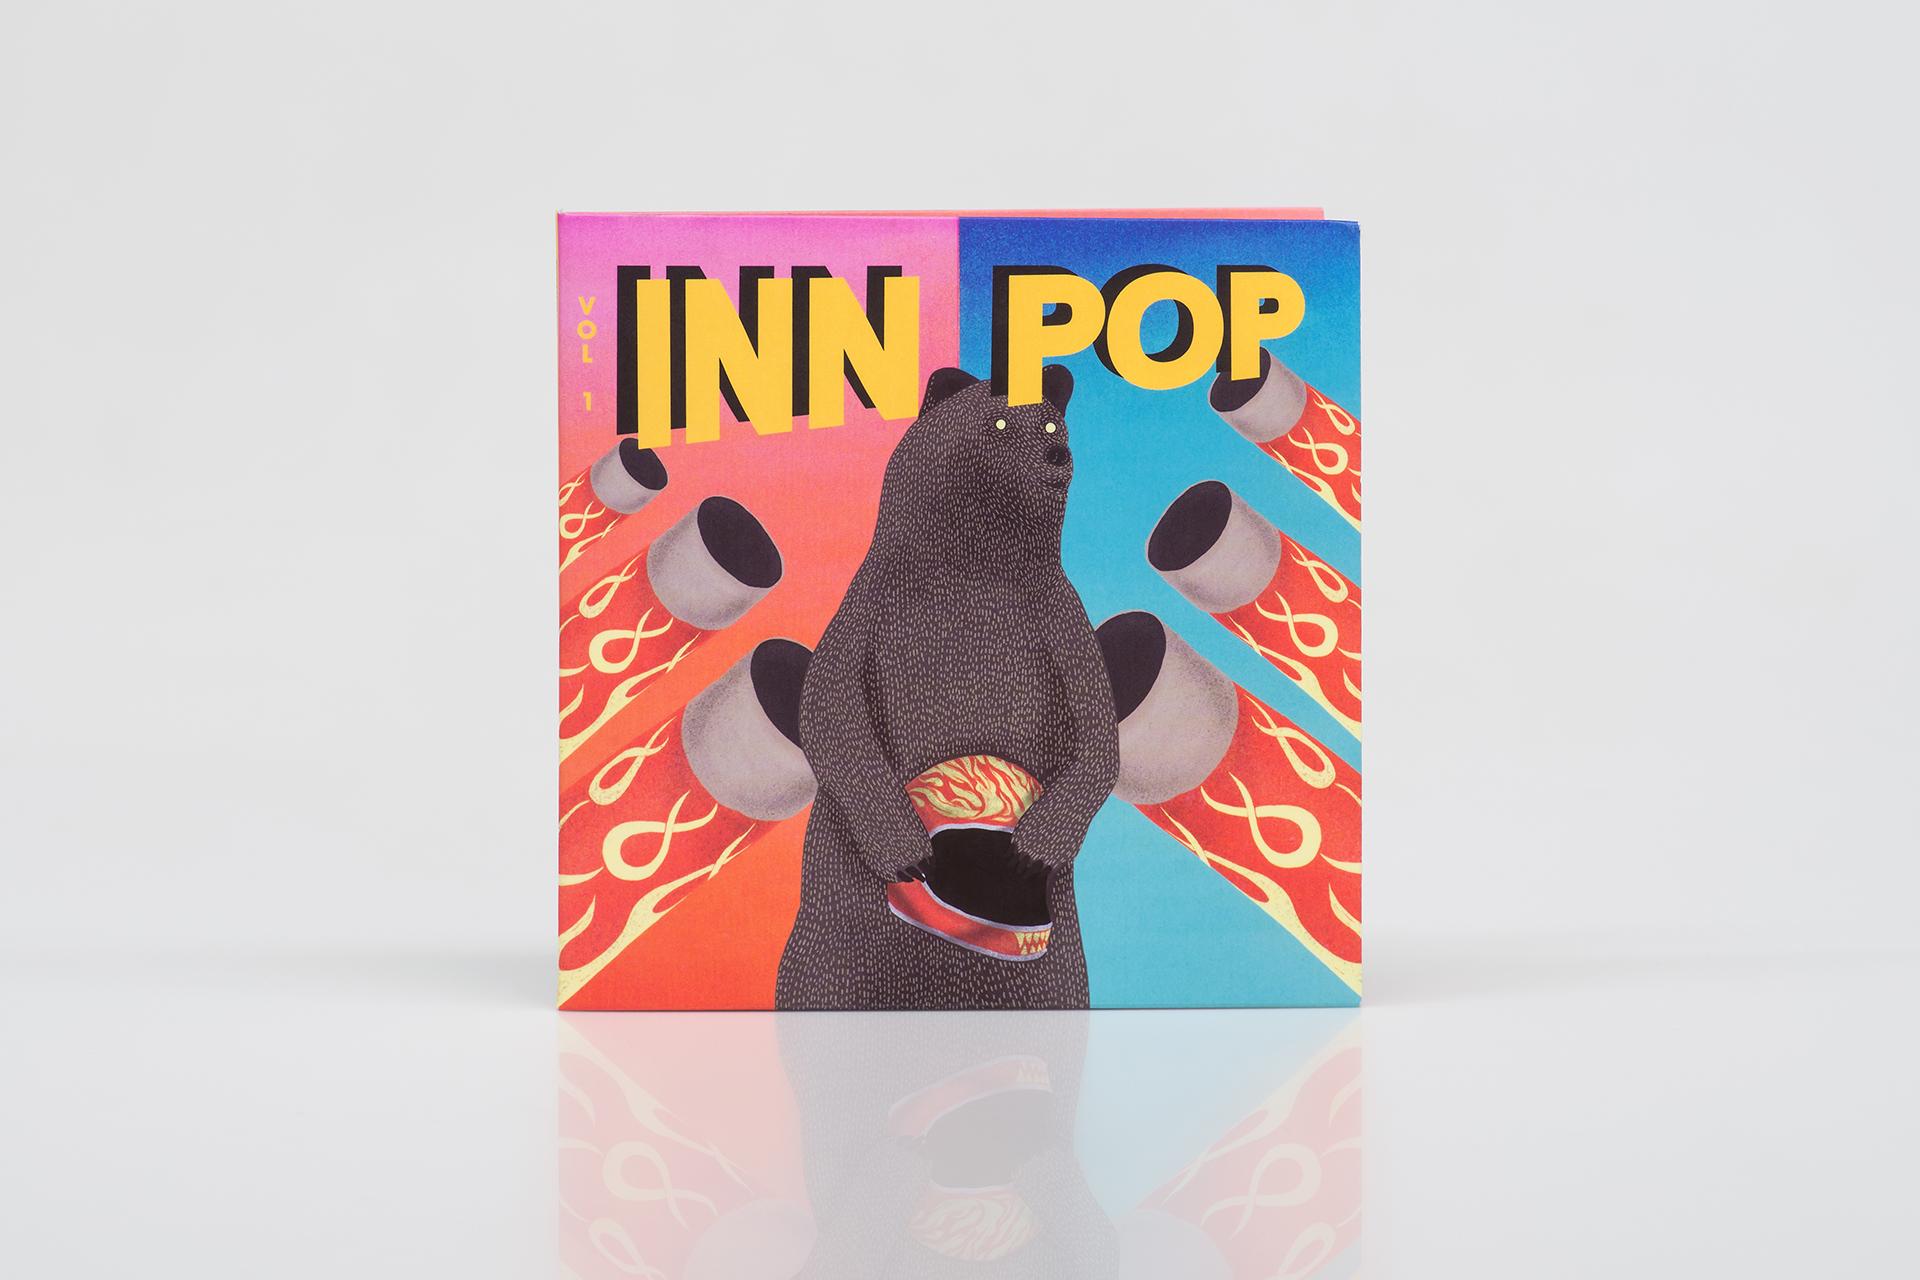 Inn Pop special edition CD